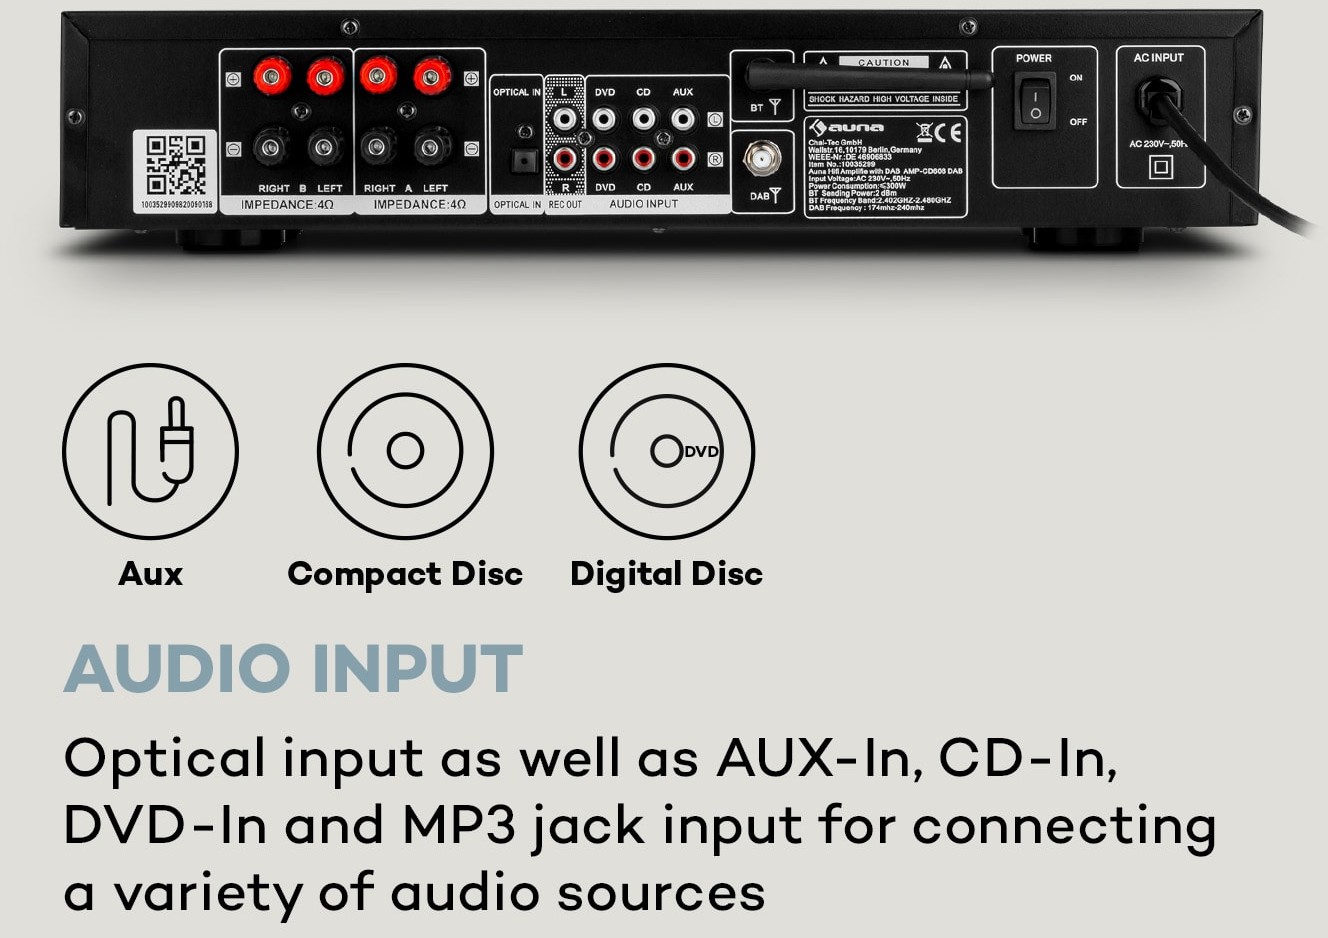 Auna AMP-CD608 DAB, wzmacniacz stereo Hi-Fi, 4 x 100 W RMS, DAB+,  Bluetooth, wejście optyczne, pilot zda - opinie użytkowników Opineo.pl